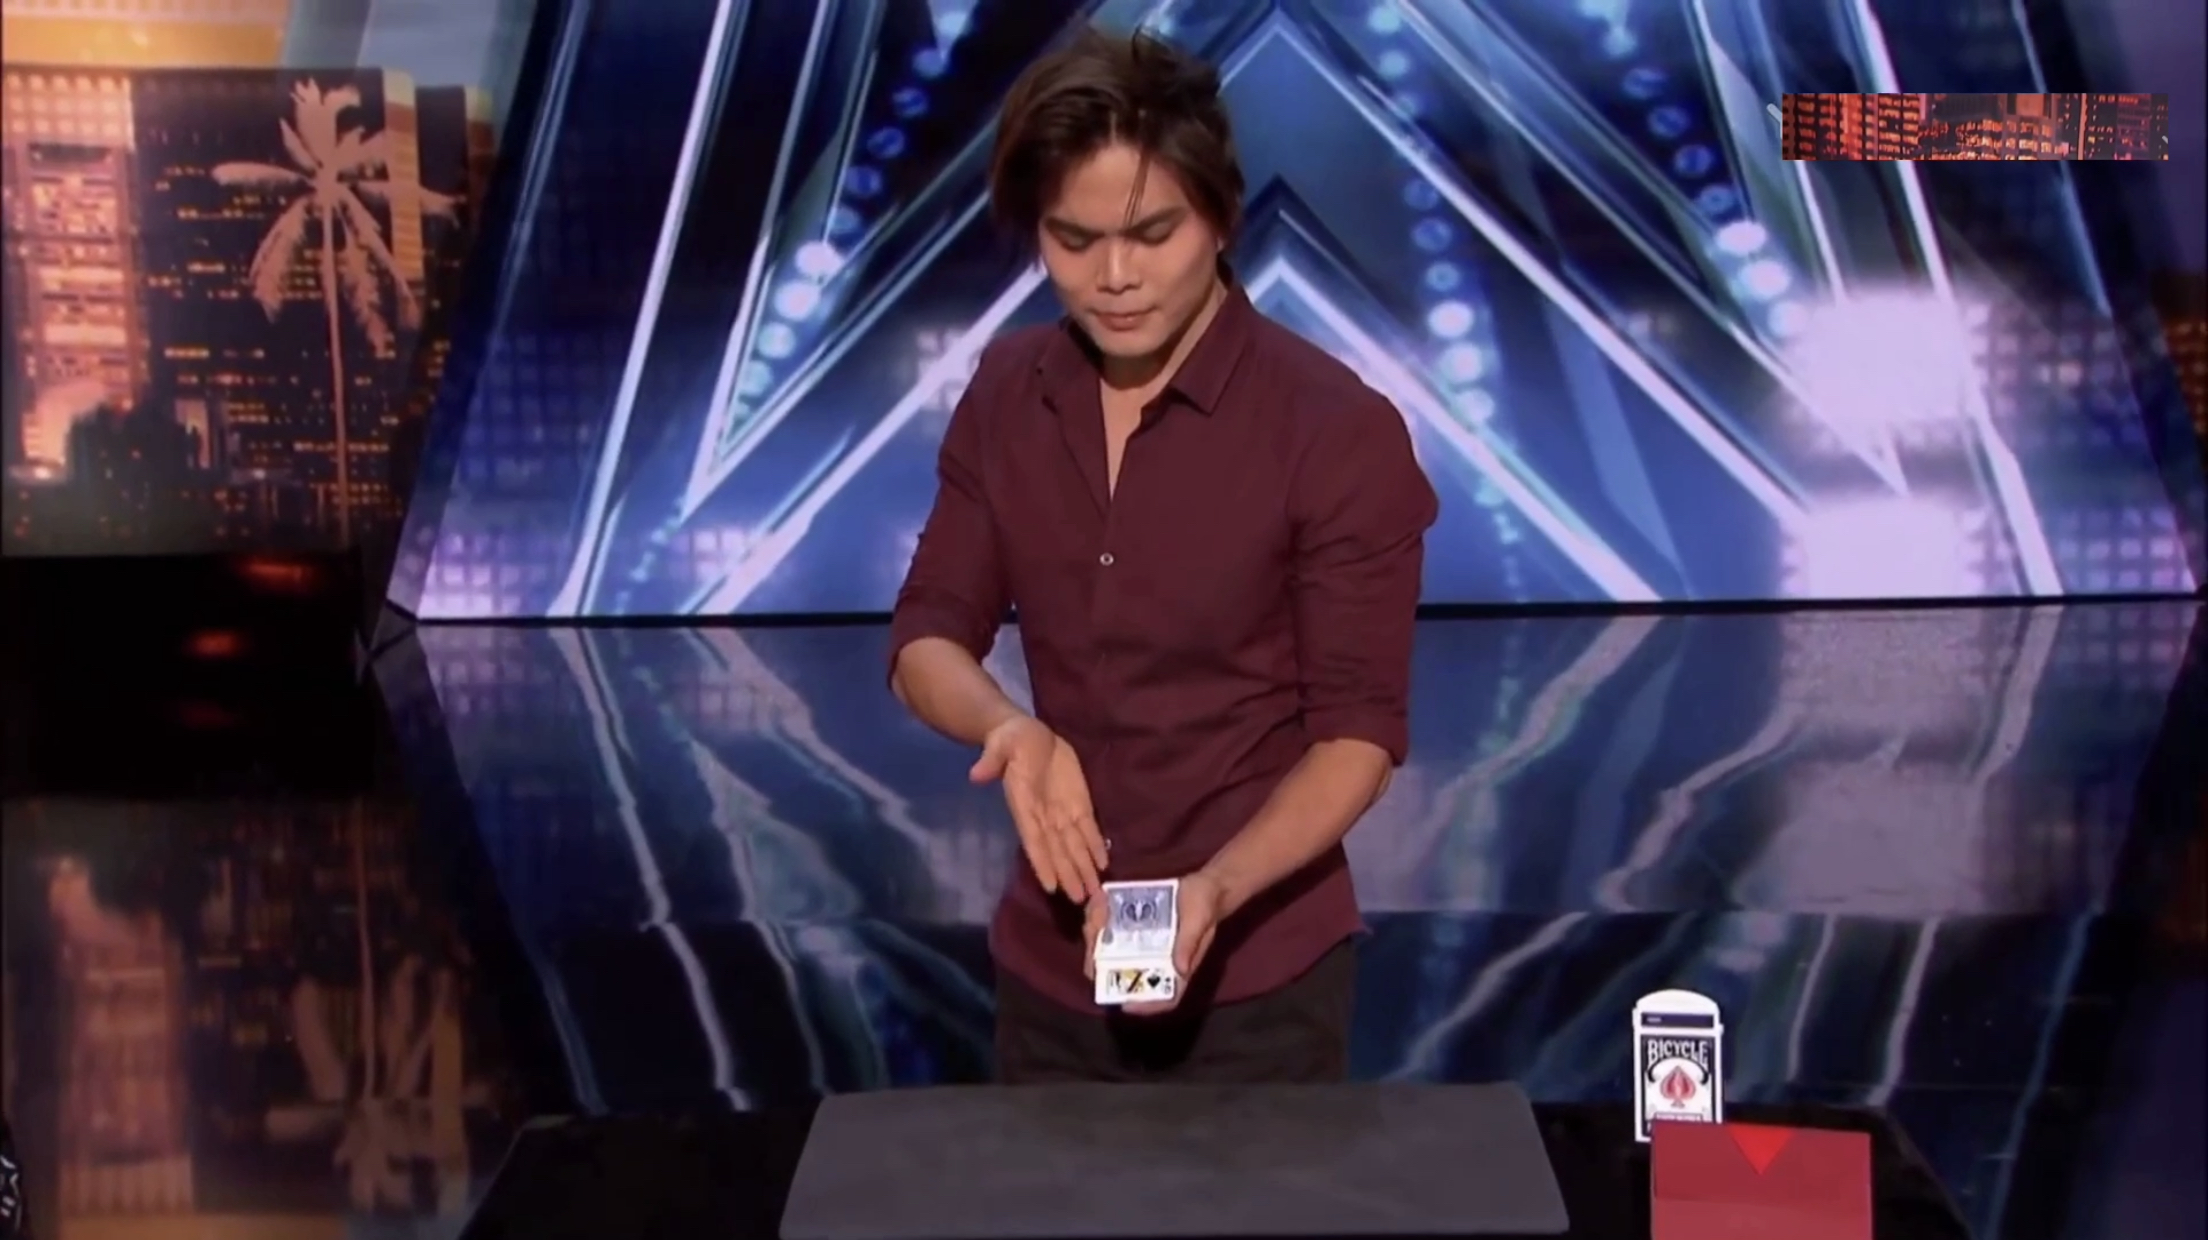 2申林表演华丽纸牌魔术,当之无愧的卡牌大师  01:00  来源:好看视频